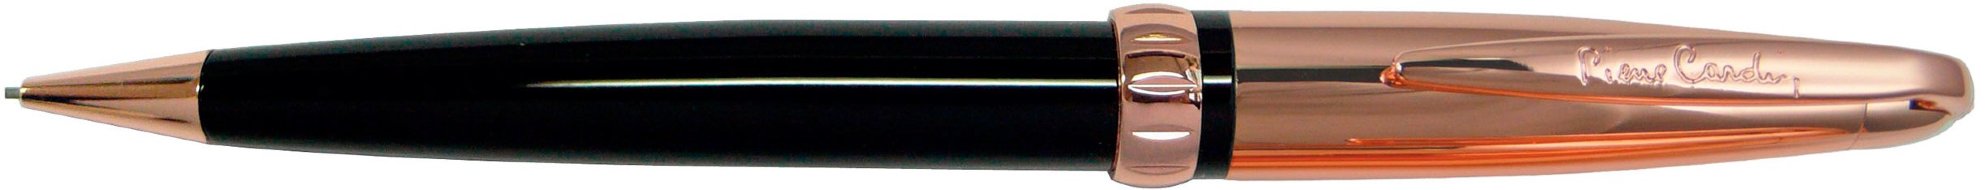 Механический карандаш Pierre Cardin Espace черный лак, розовое золото